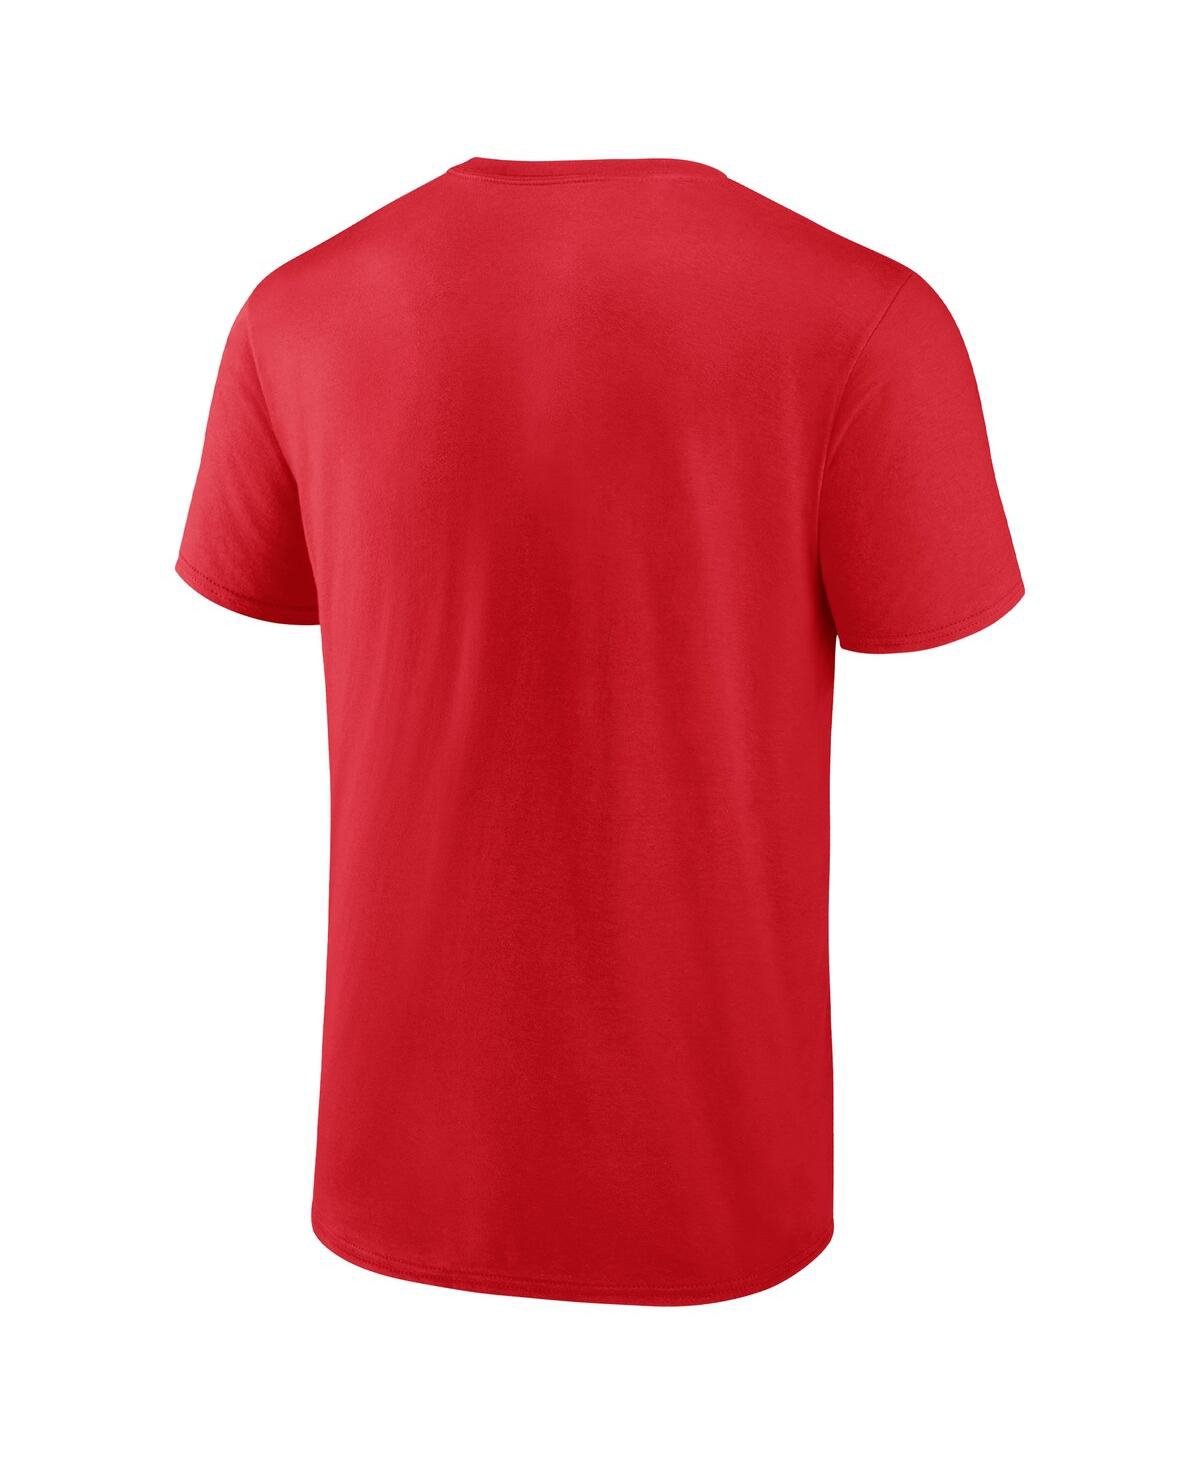 Shop Fanatics Men's  Red Kansas City Chiefs 2023 Afc West Division Champions Conquer T-shirt